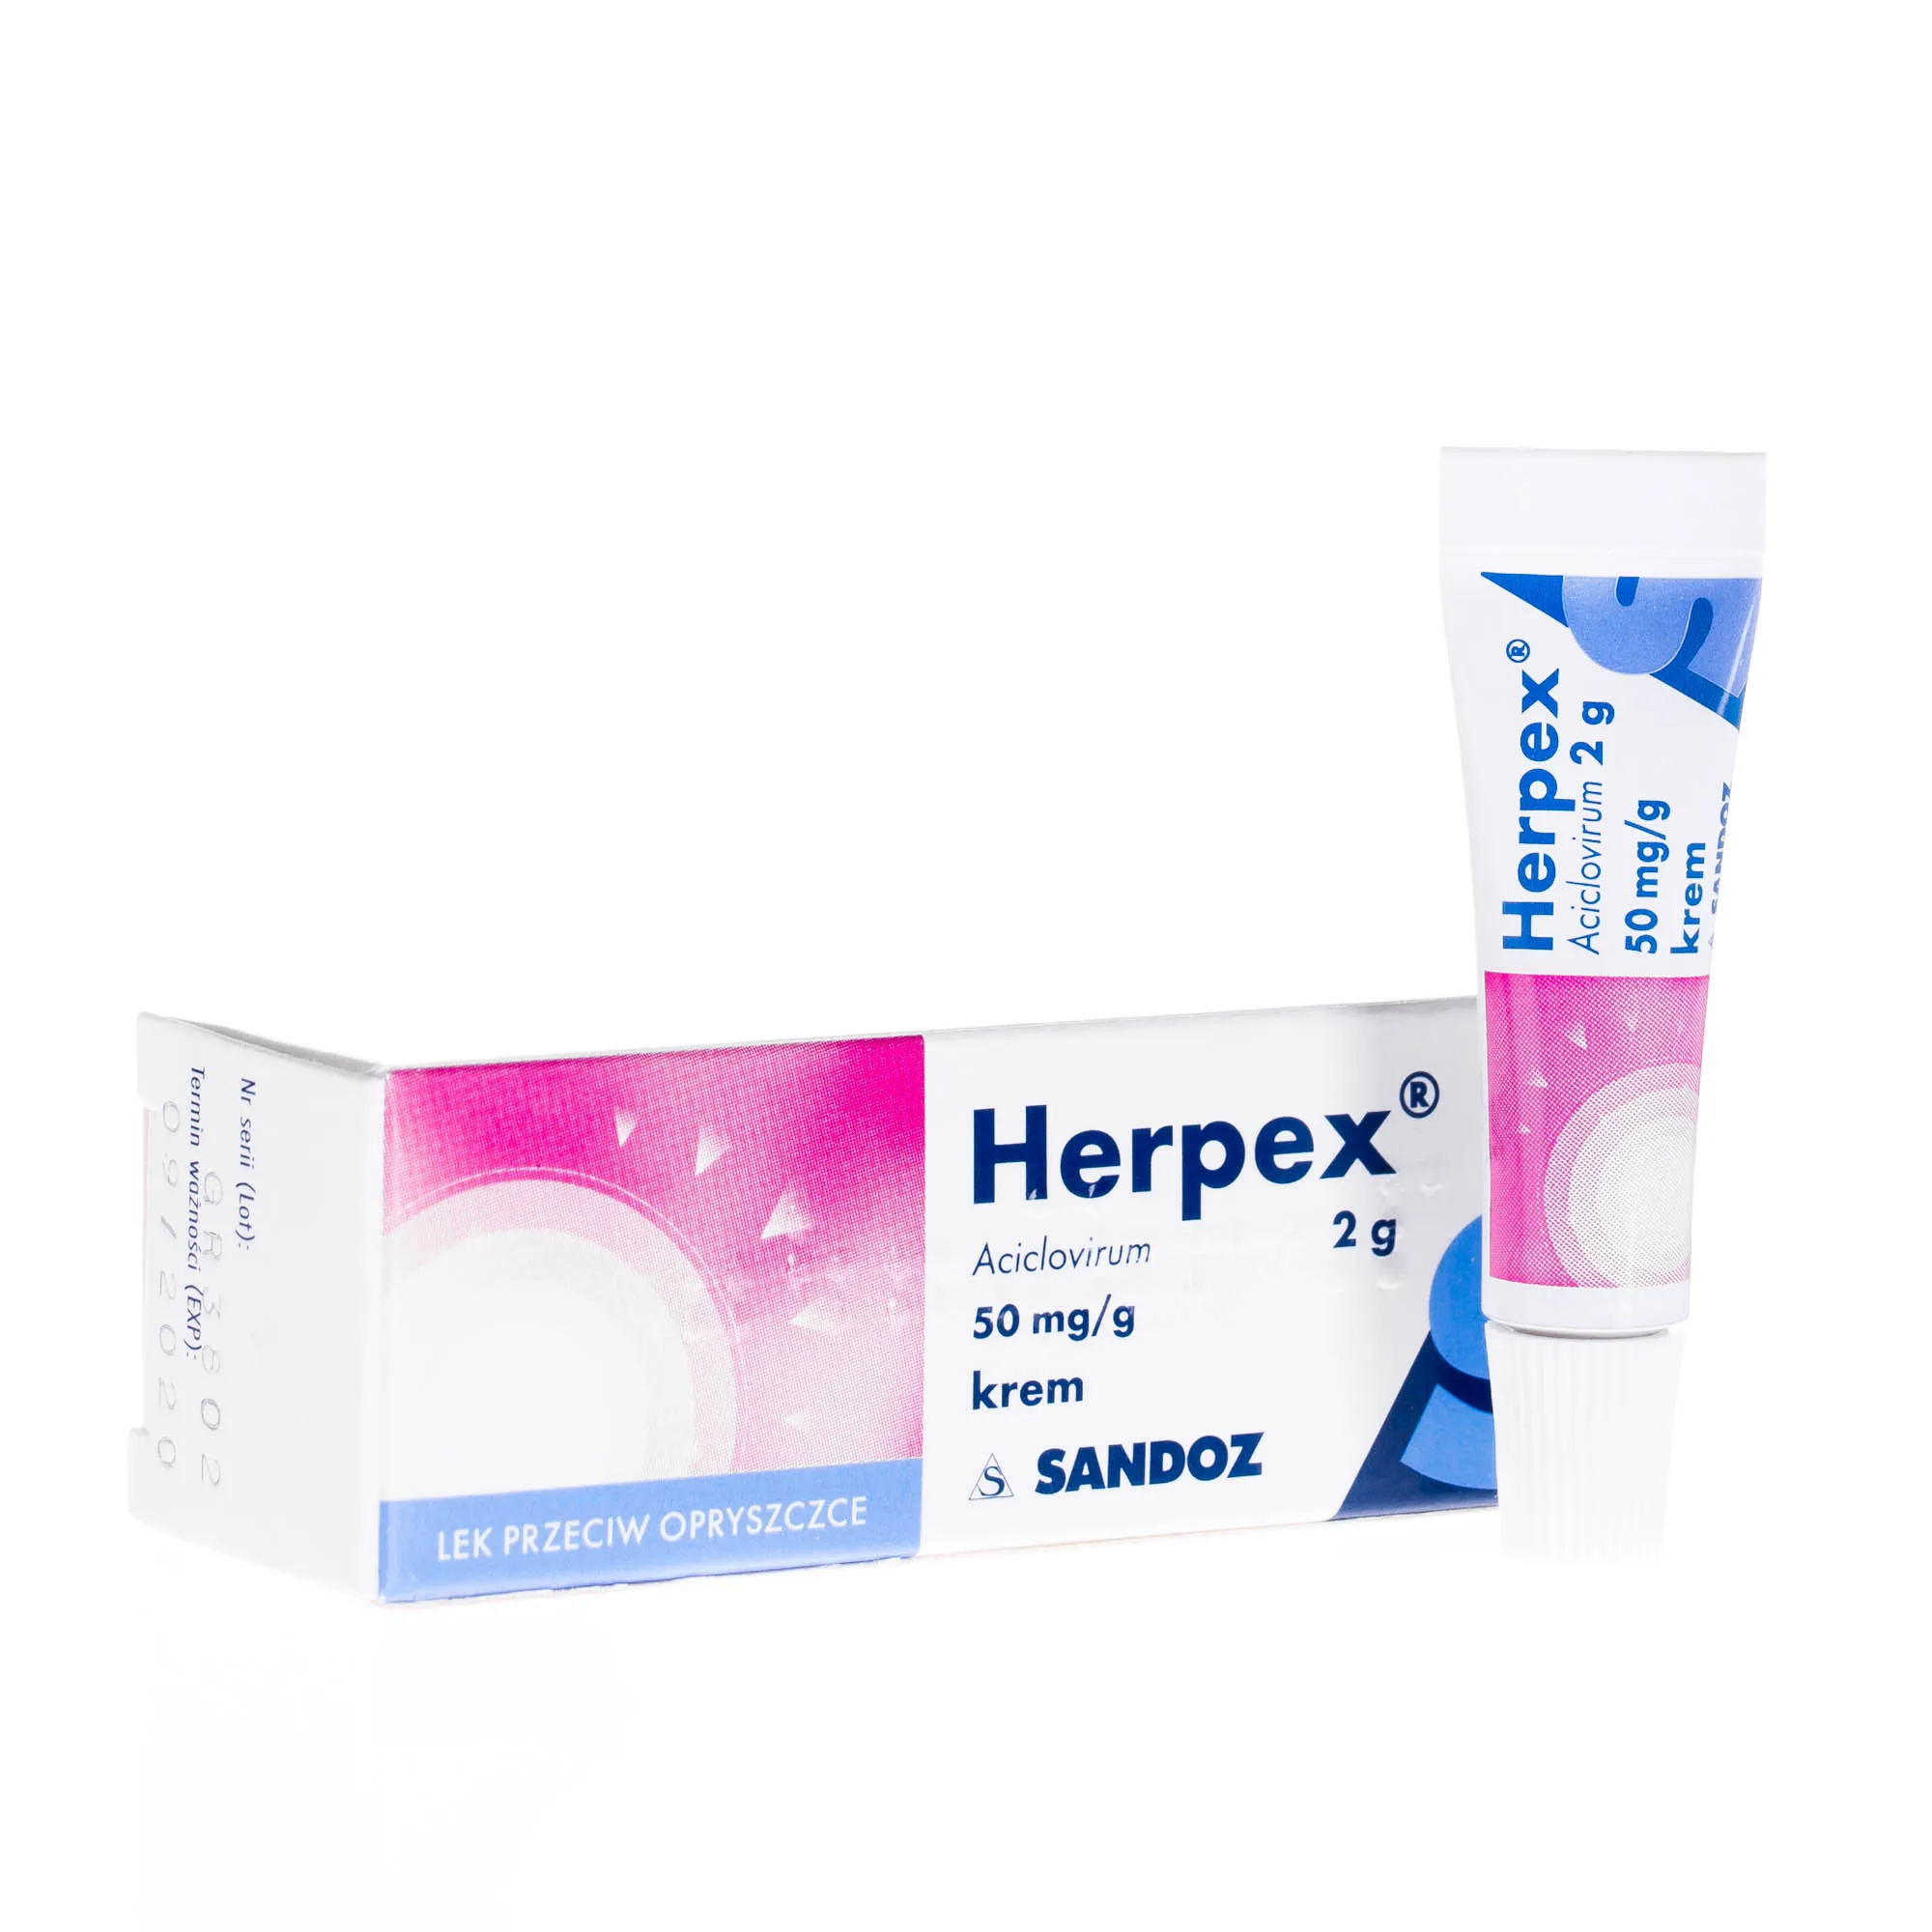 Herpex 50 mg/g - krem przeciw opryszczce, 2 g